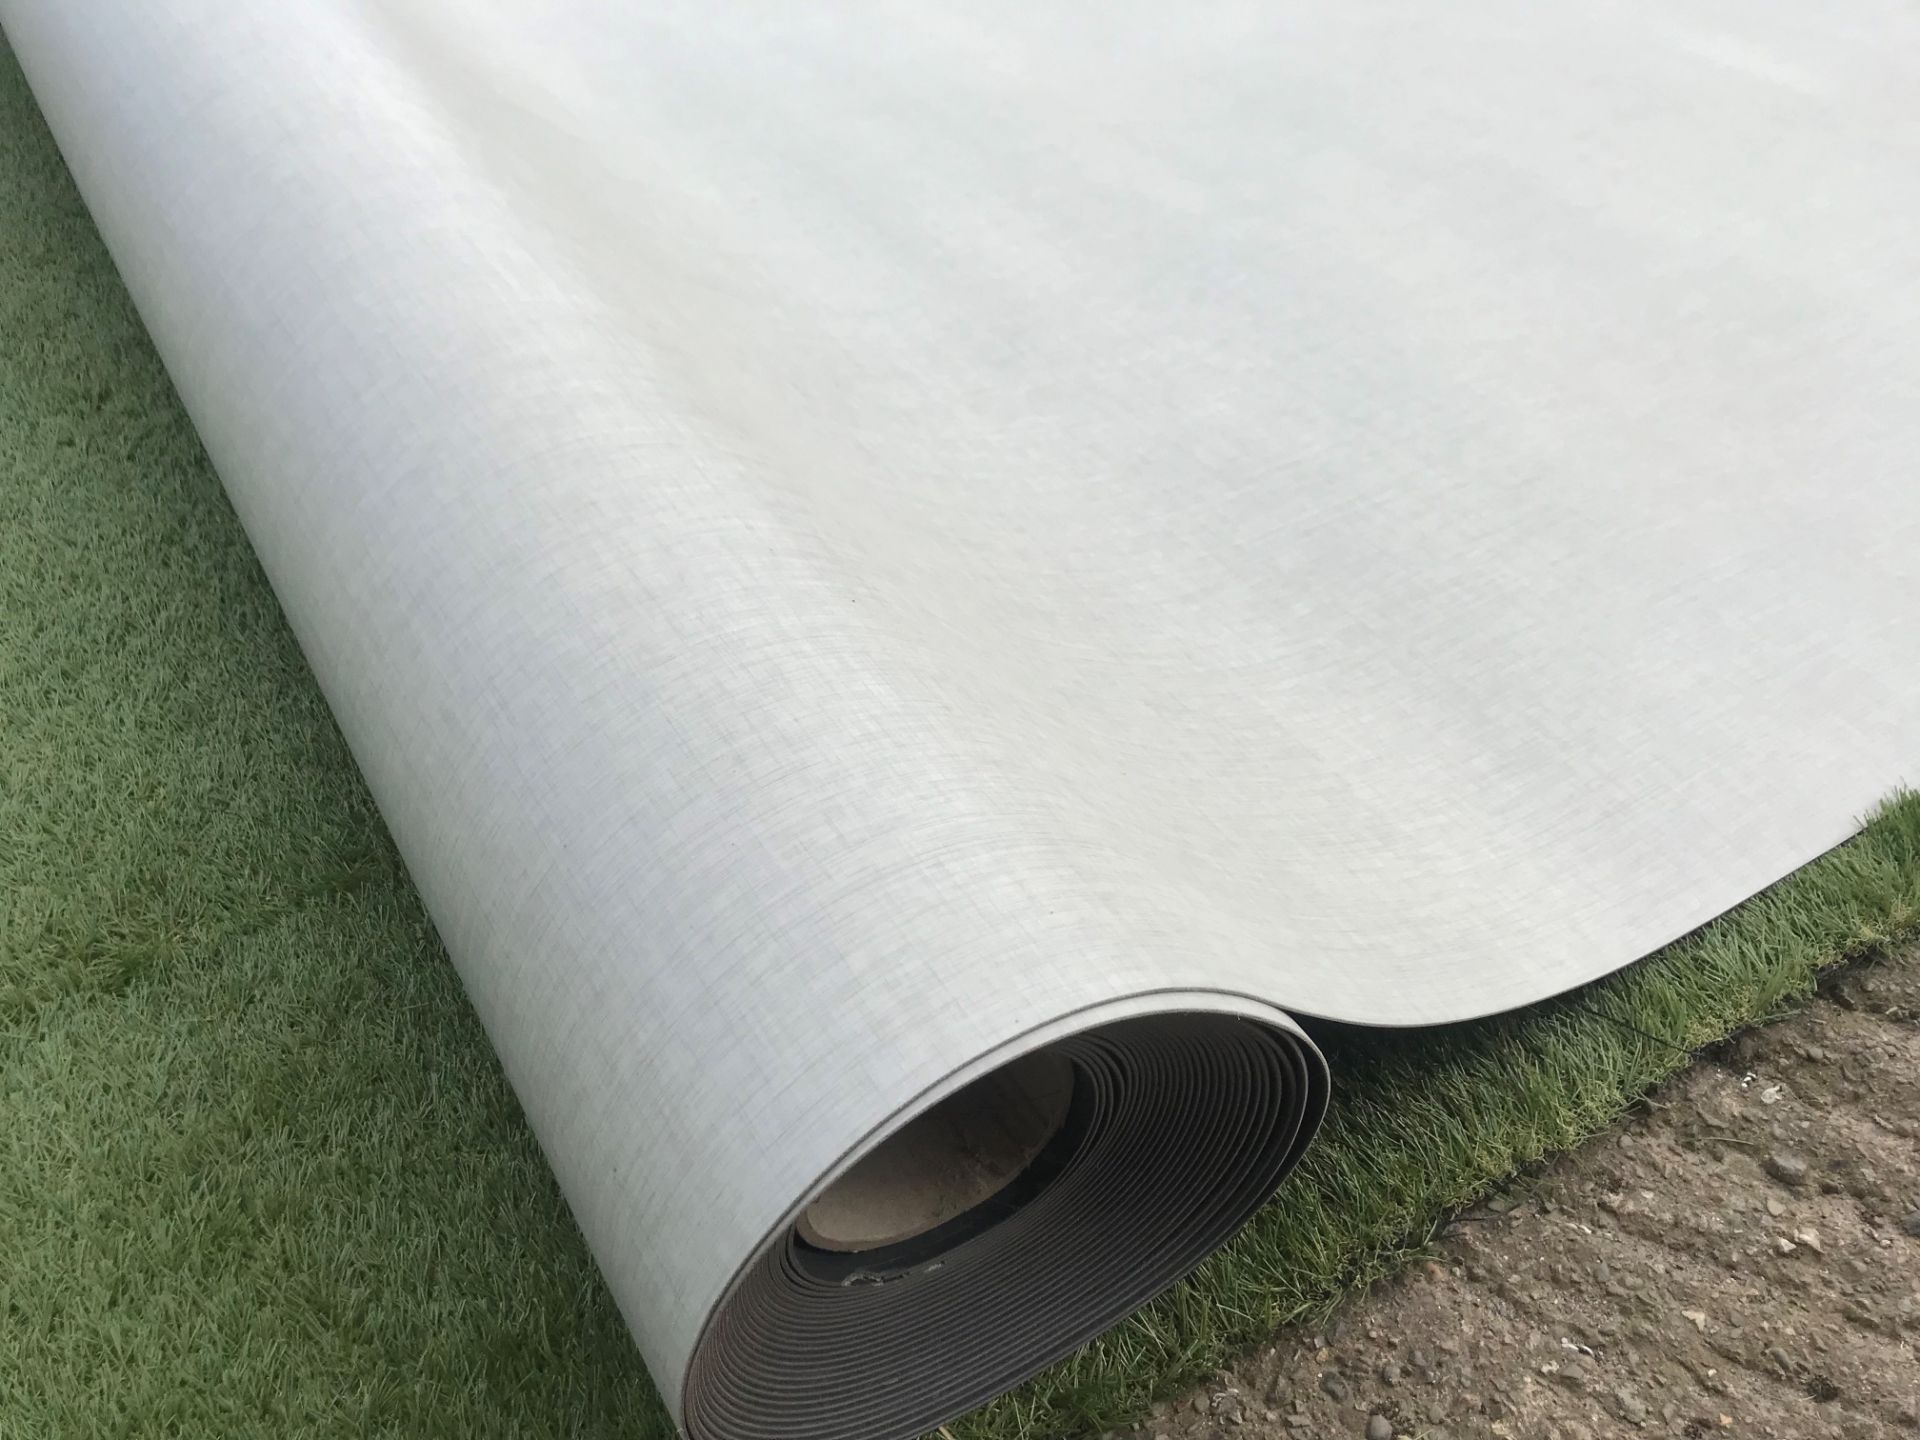 1 x GERFLOR Tarkett Commercial Grade Safety Flooring - Colour: Light Grey - 20X2 Meter Roll - Ref: